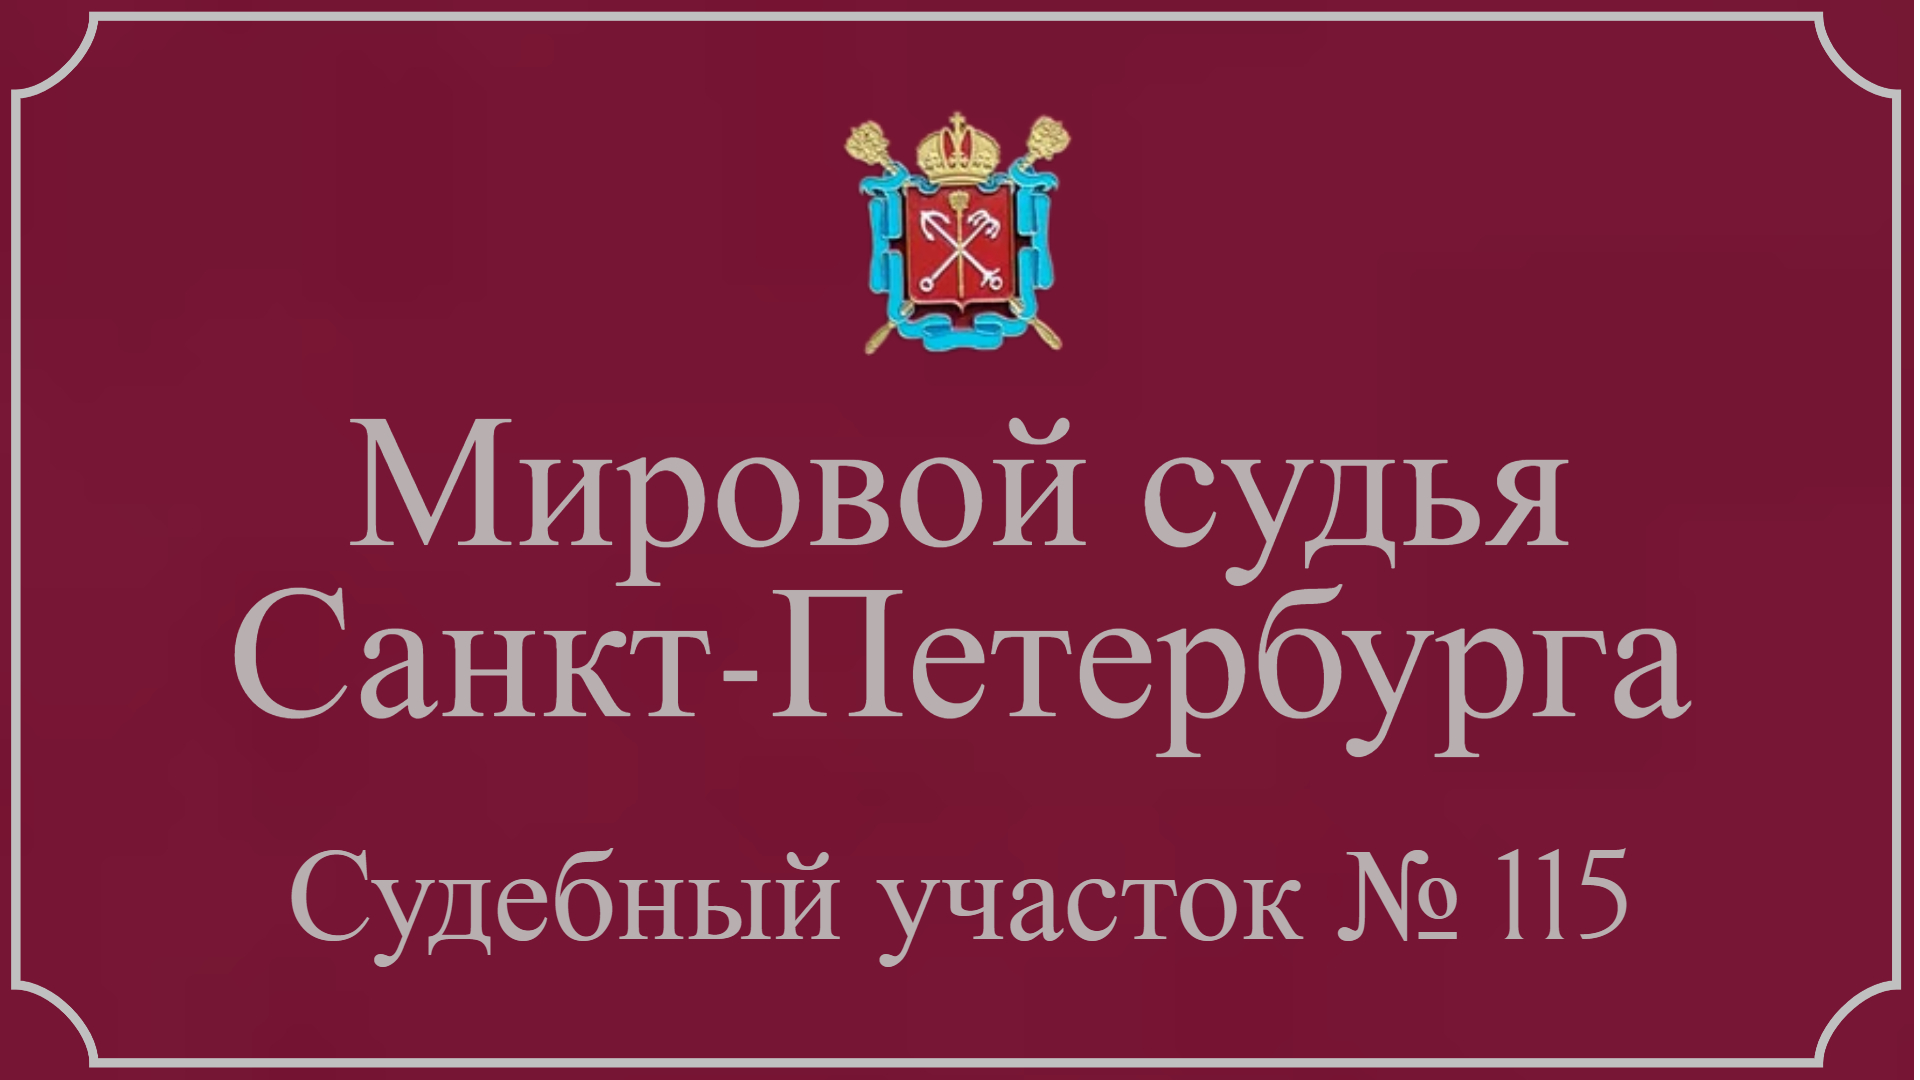 Информация по 115 судебному участку Санкт-Петербурга в г. Ломоносов.